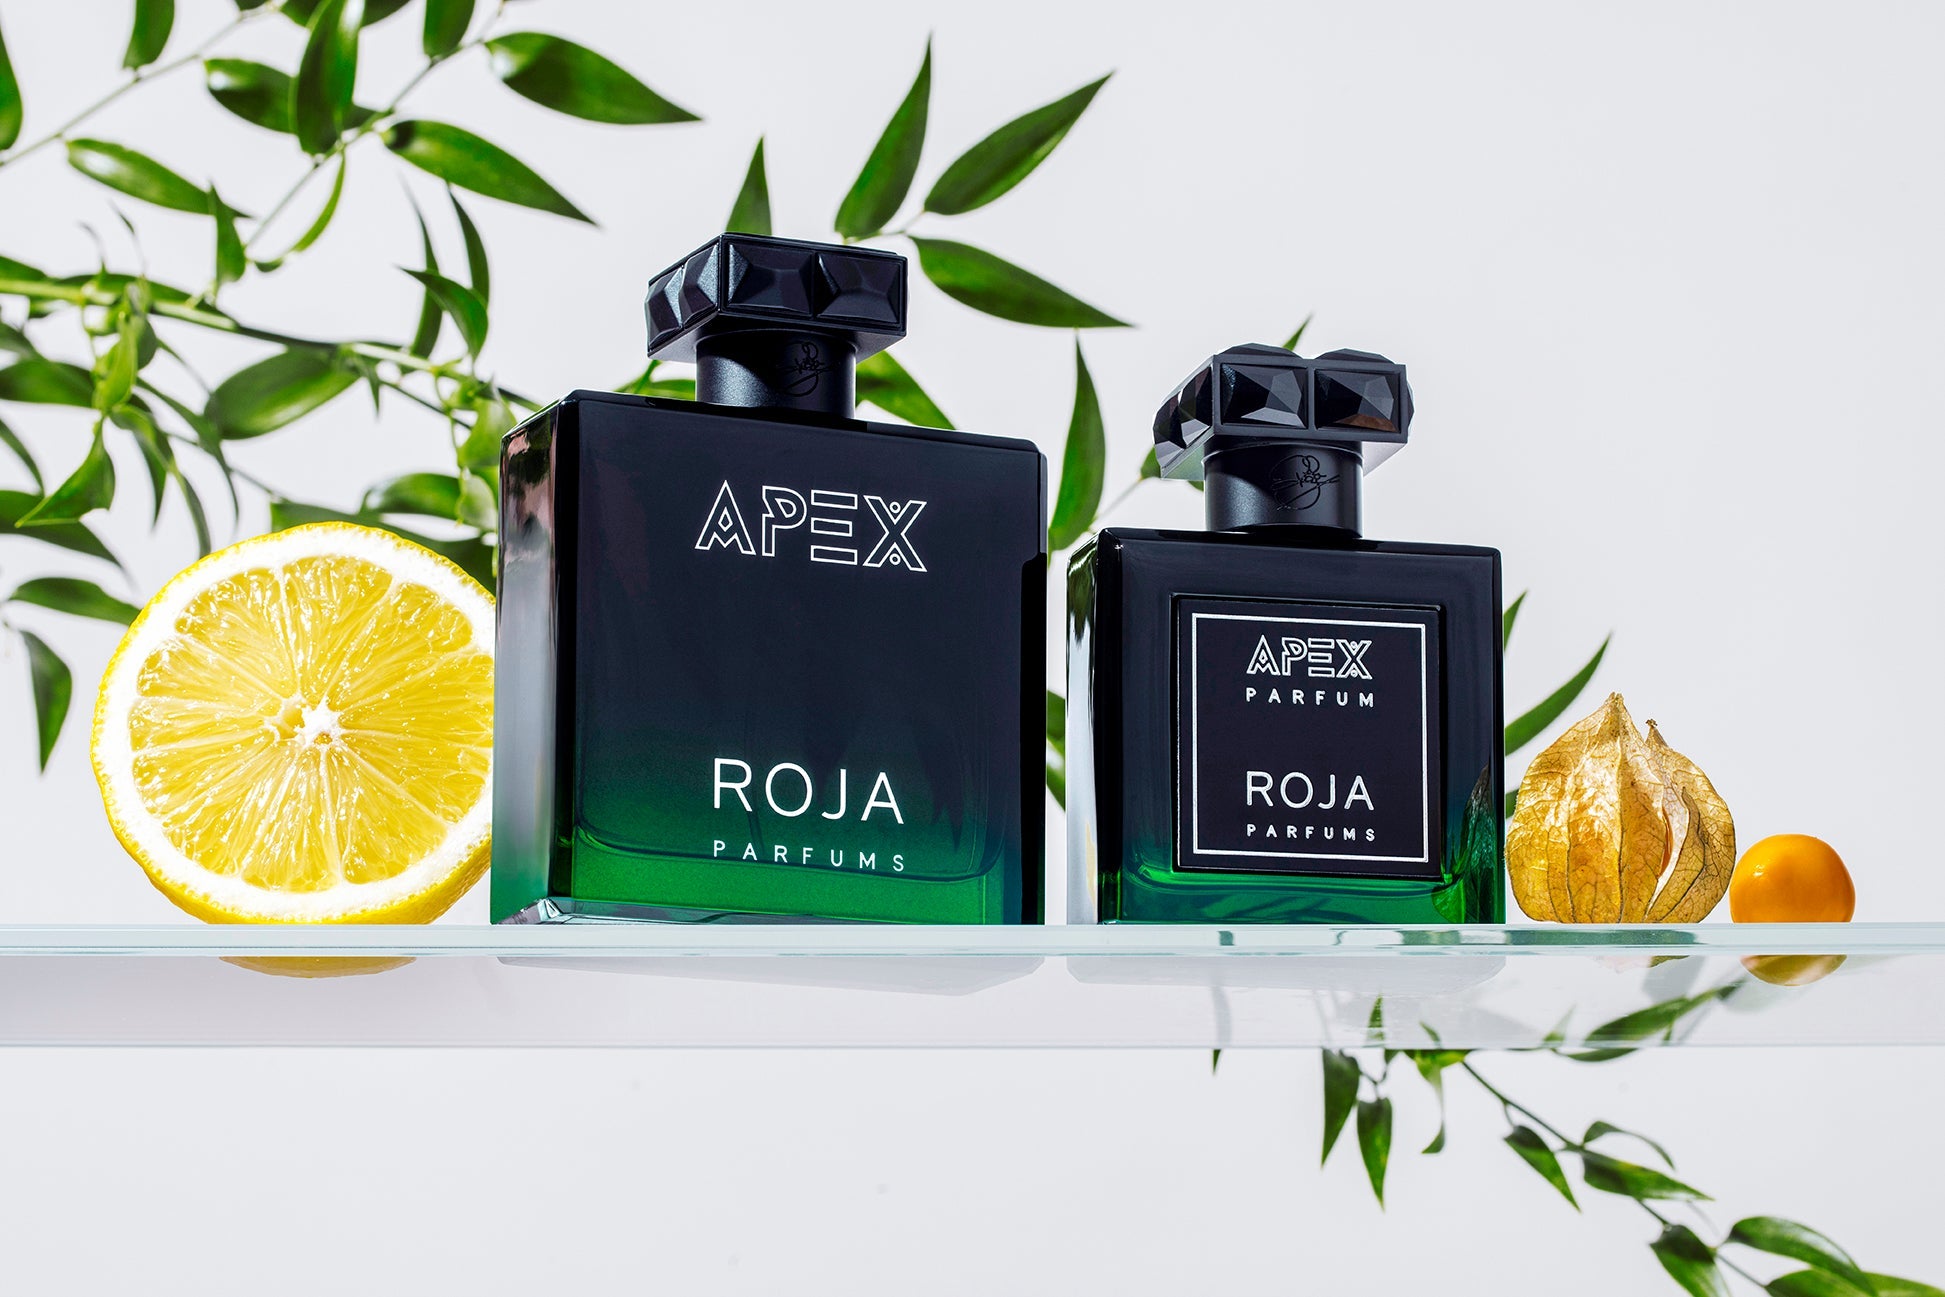 Nước Hoa Nam Roja Parfums Apex